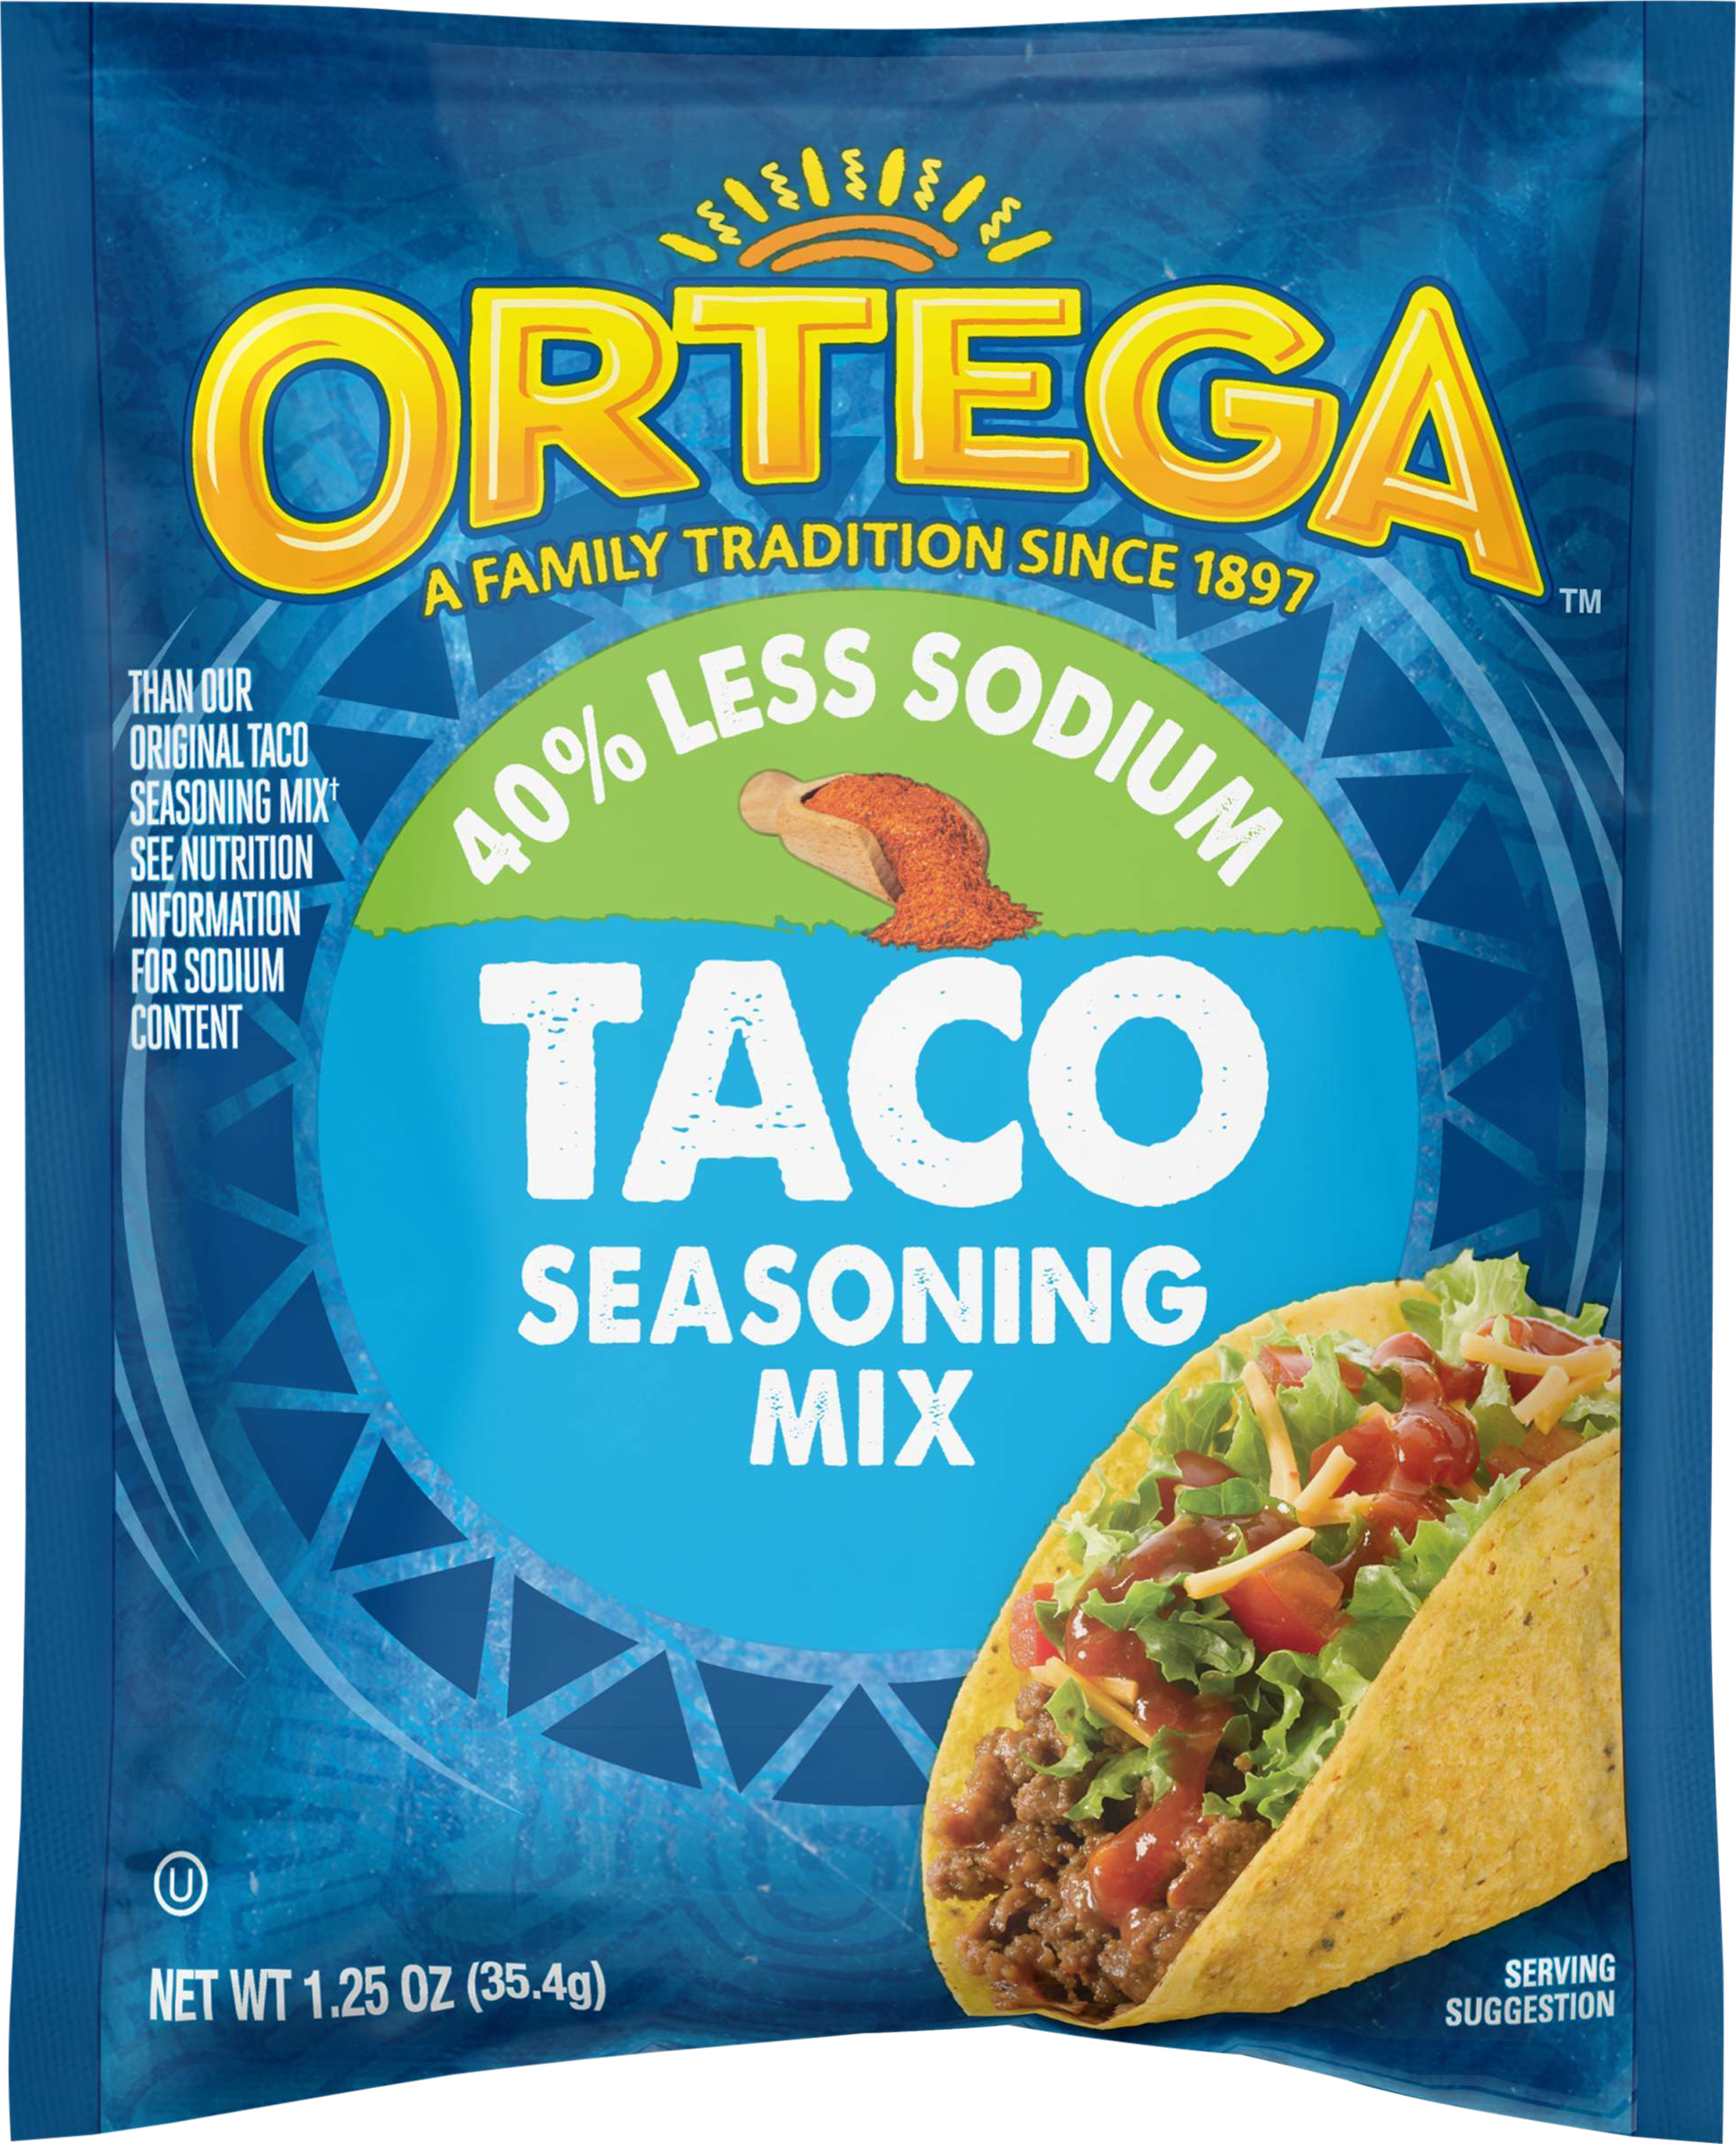 Ortega Taco 40% Less Sodium Seasoning Mix, 1.25 oz - image 5 of 11